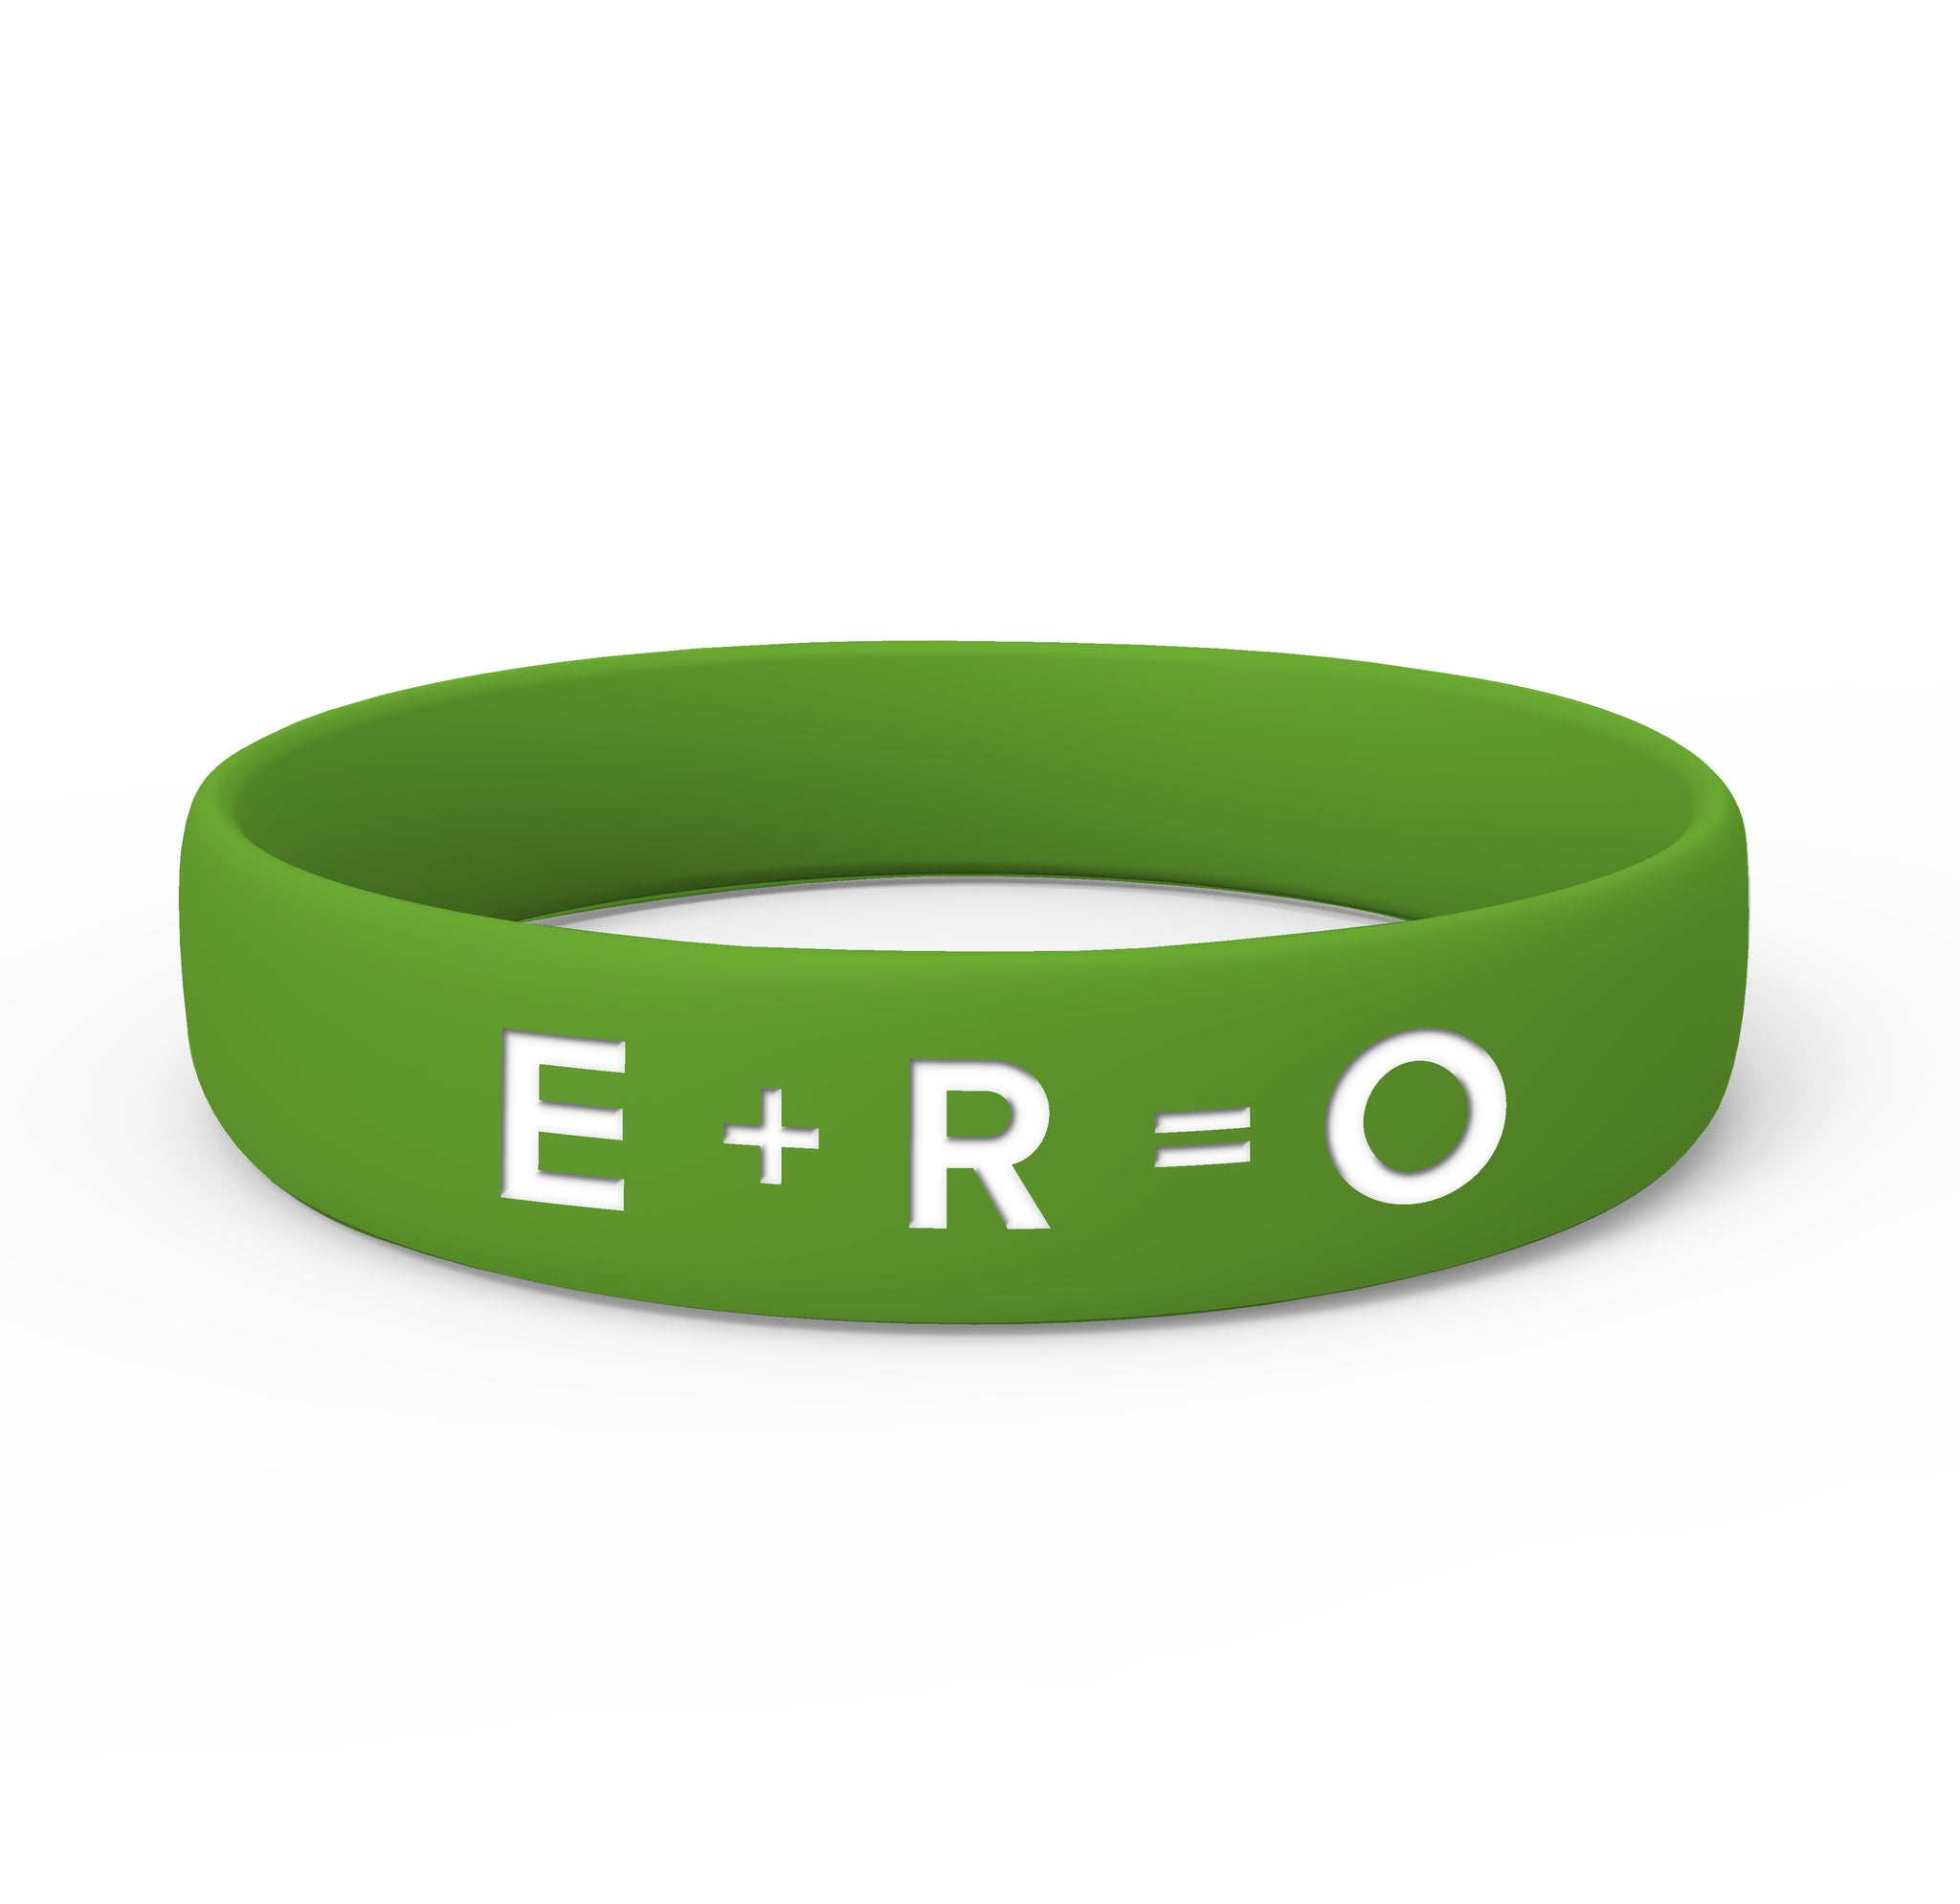 E+R=O Wristbands (Adult)